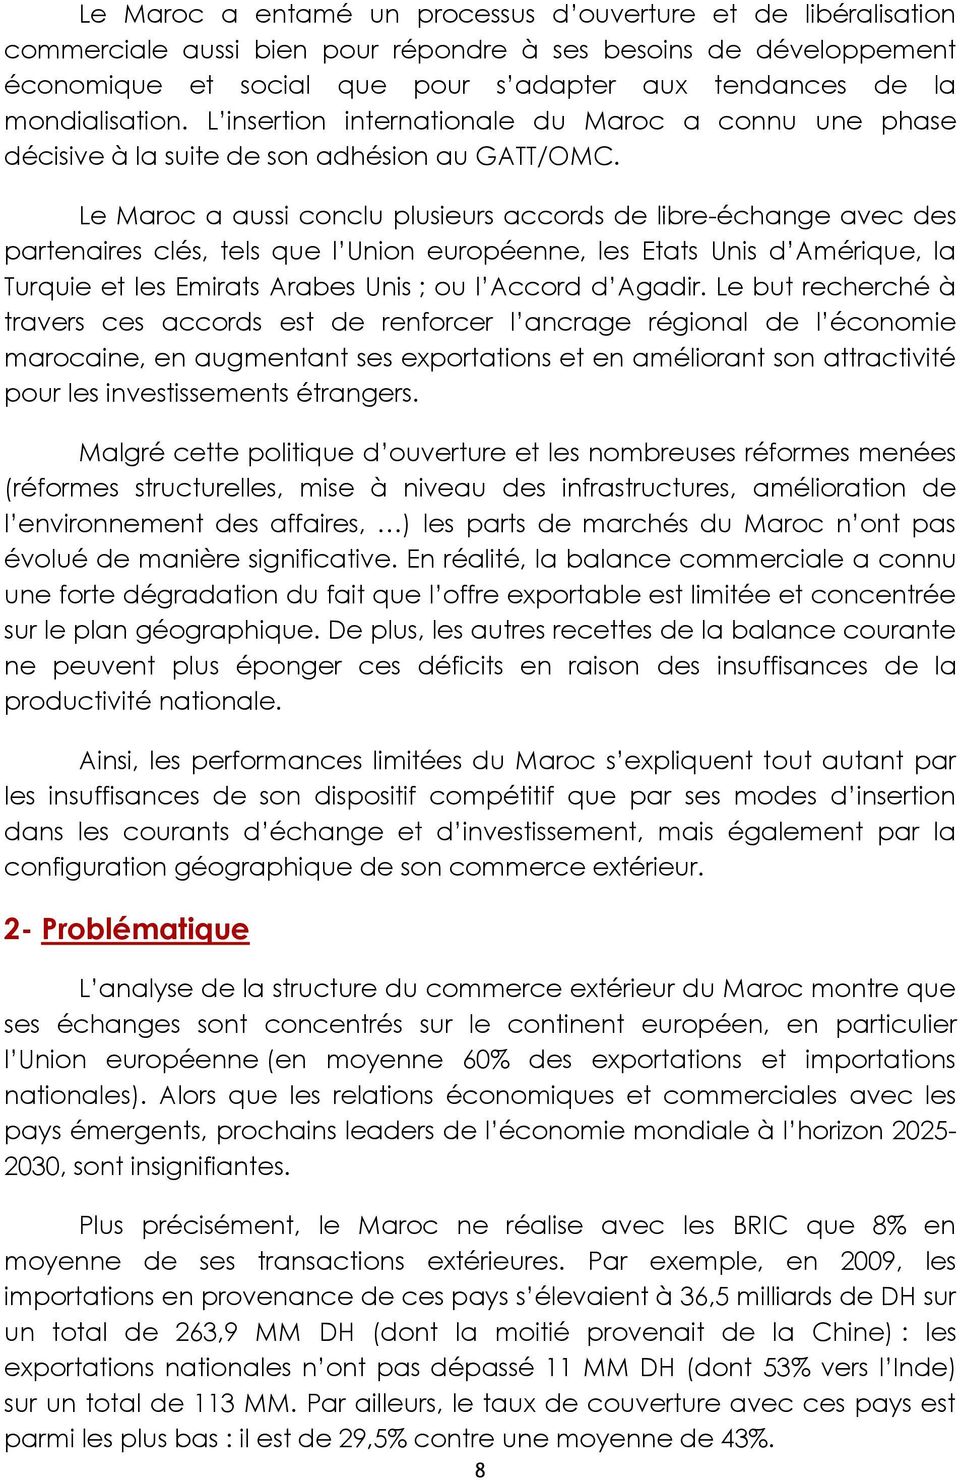 Le Maroc a aussi conclu plusieurs accords de libre-échange avec des partenaires clés, tels que l Union européenne, les Etats Unis d Amérique, la Turquie et les Emirats Arabes Unis ; ou l Accord d